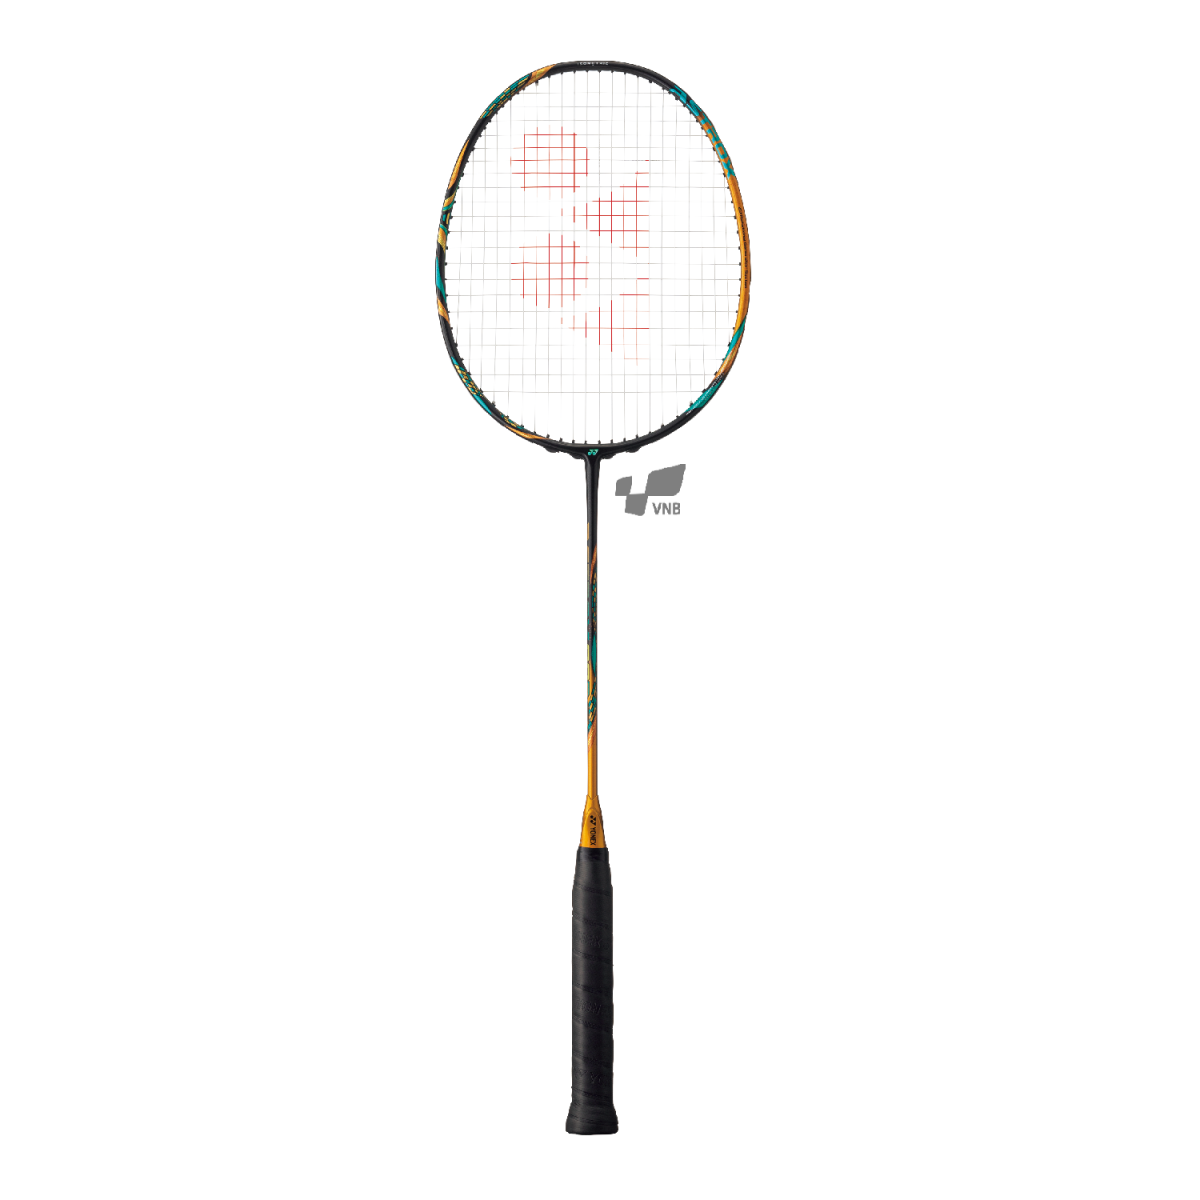 Những cây vợt cầu lông cao cấp được người chơi phong trào và chuyên nghiệp ưa chuộng nhất